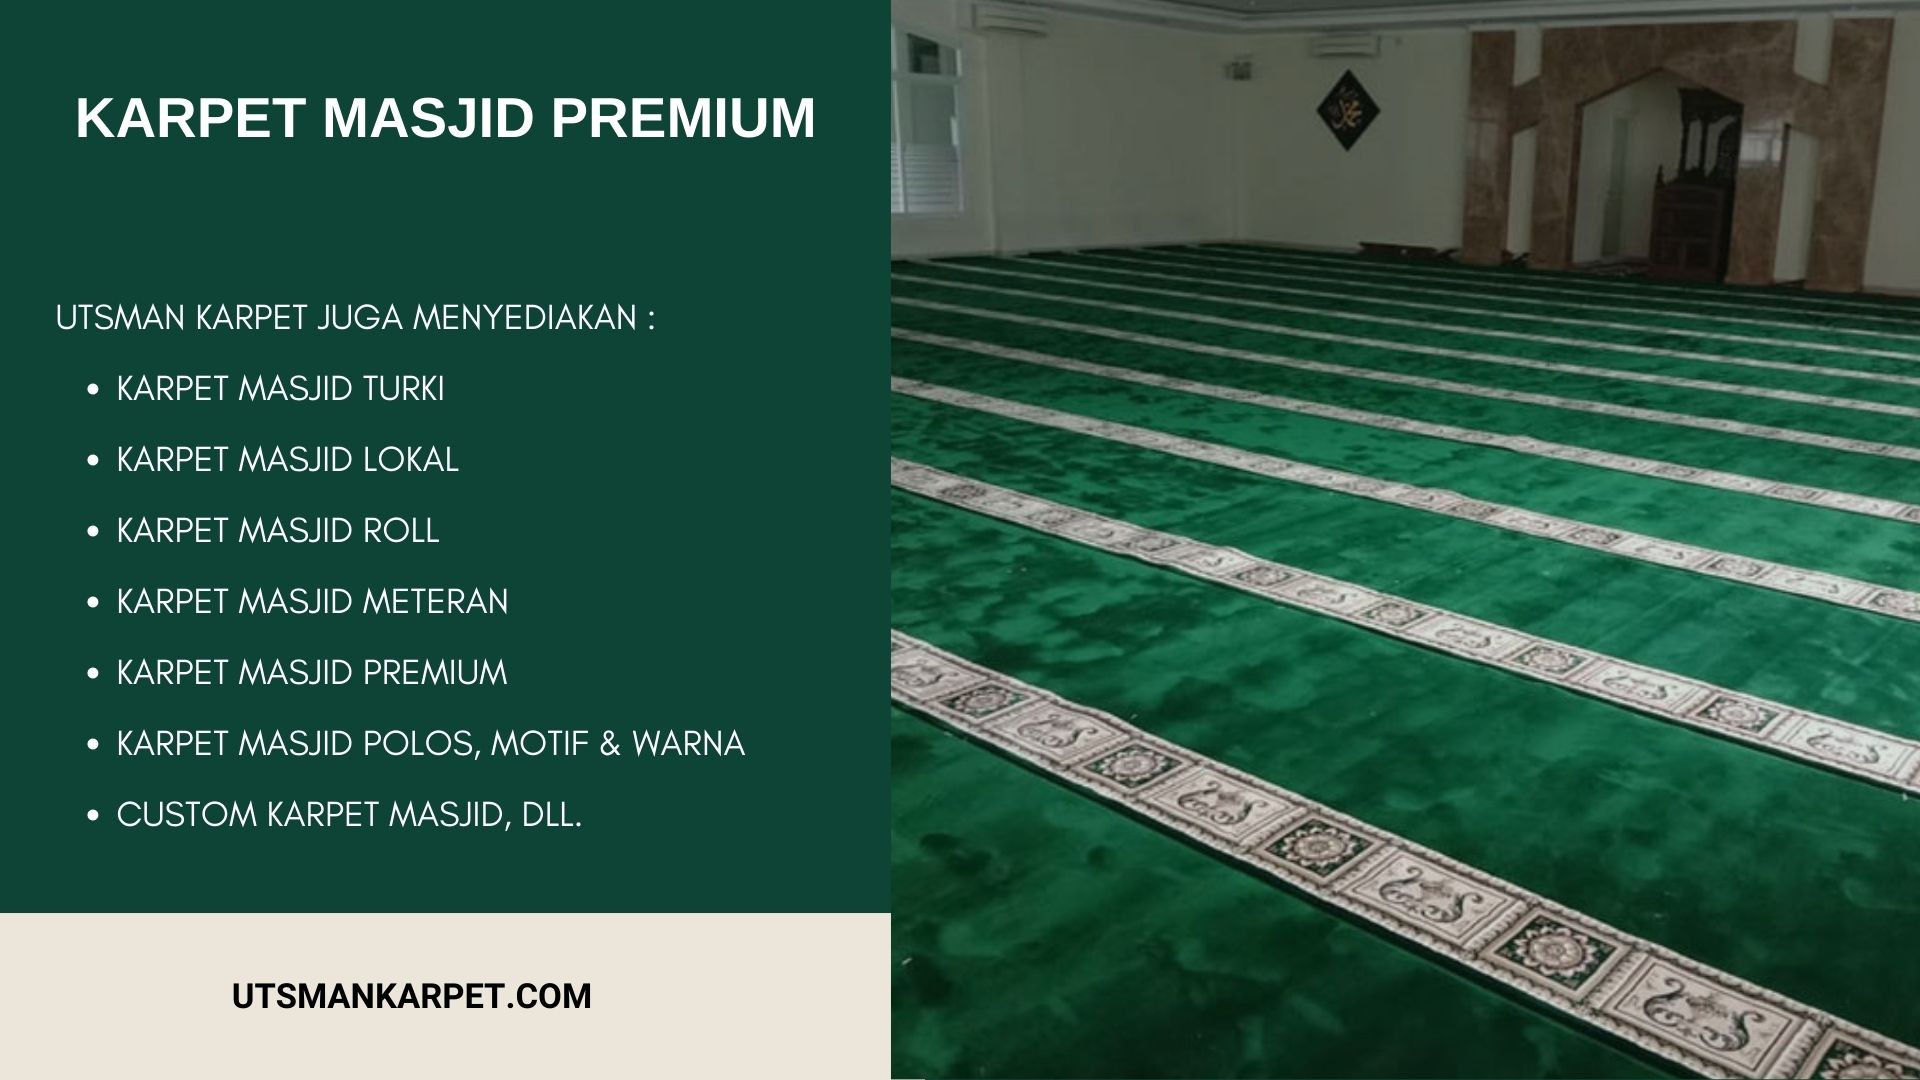 Karpet Masjid PREMIUM